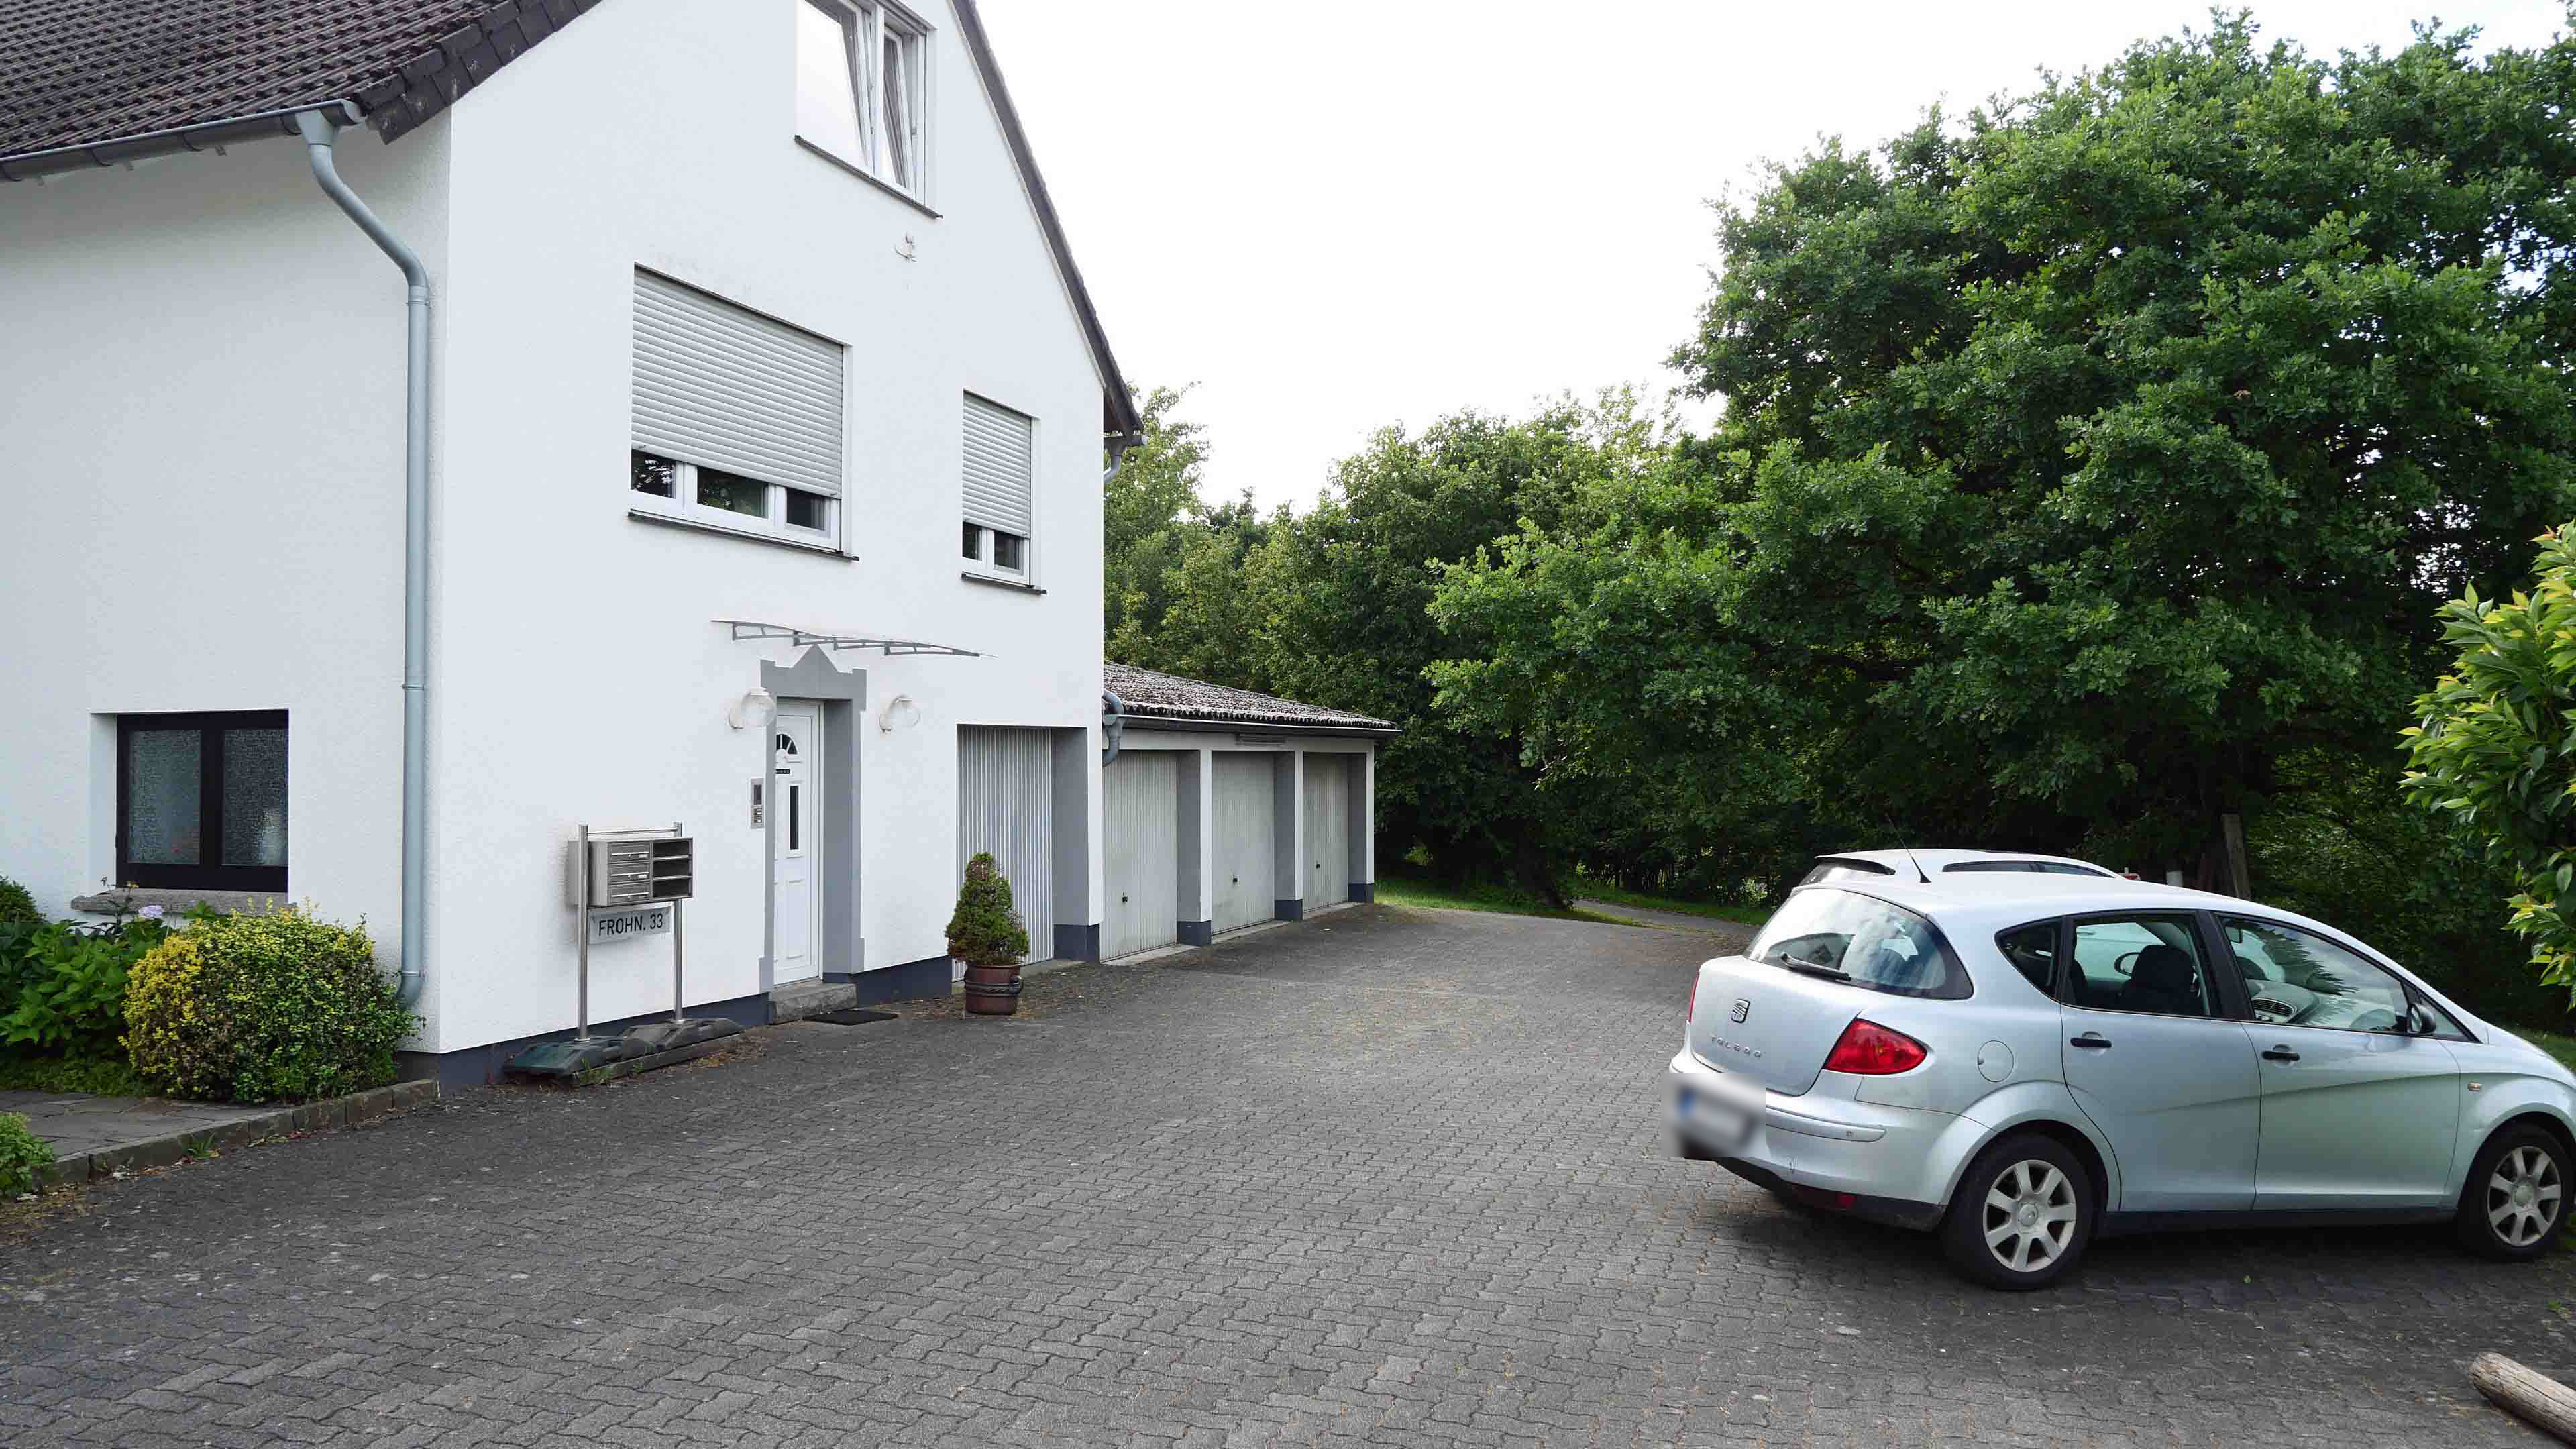 Reichshof-Wildbergerhütte: Wohnhaus mit 3 Wohneinheiten und 4 Garagen, Eingangsseite mit PKW-Stellplätzen und...